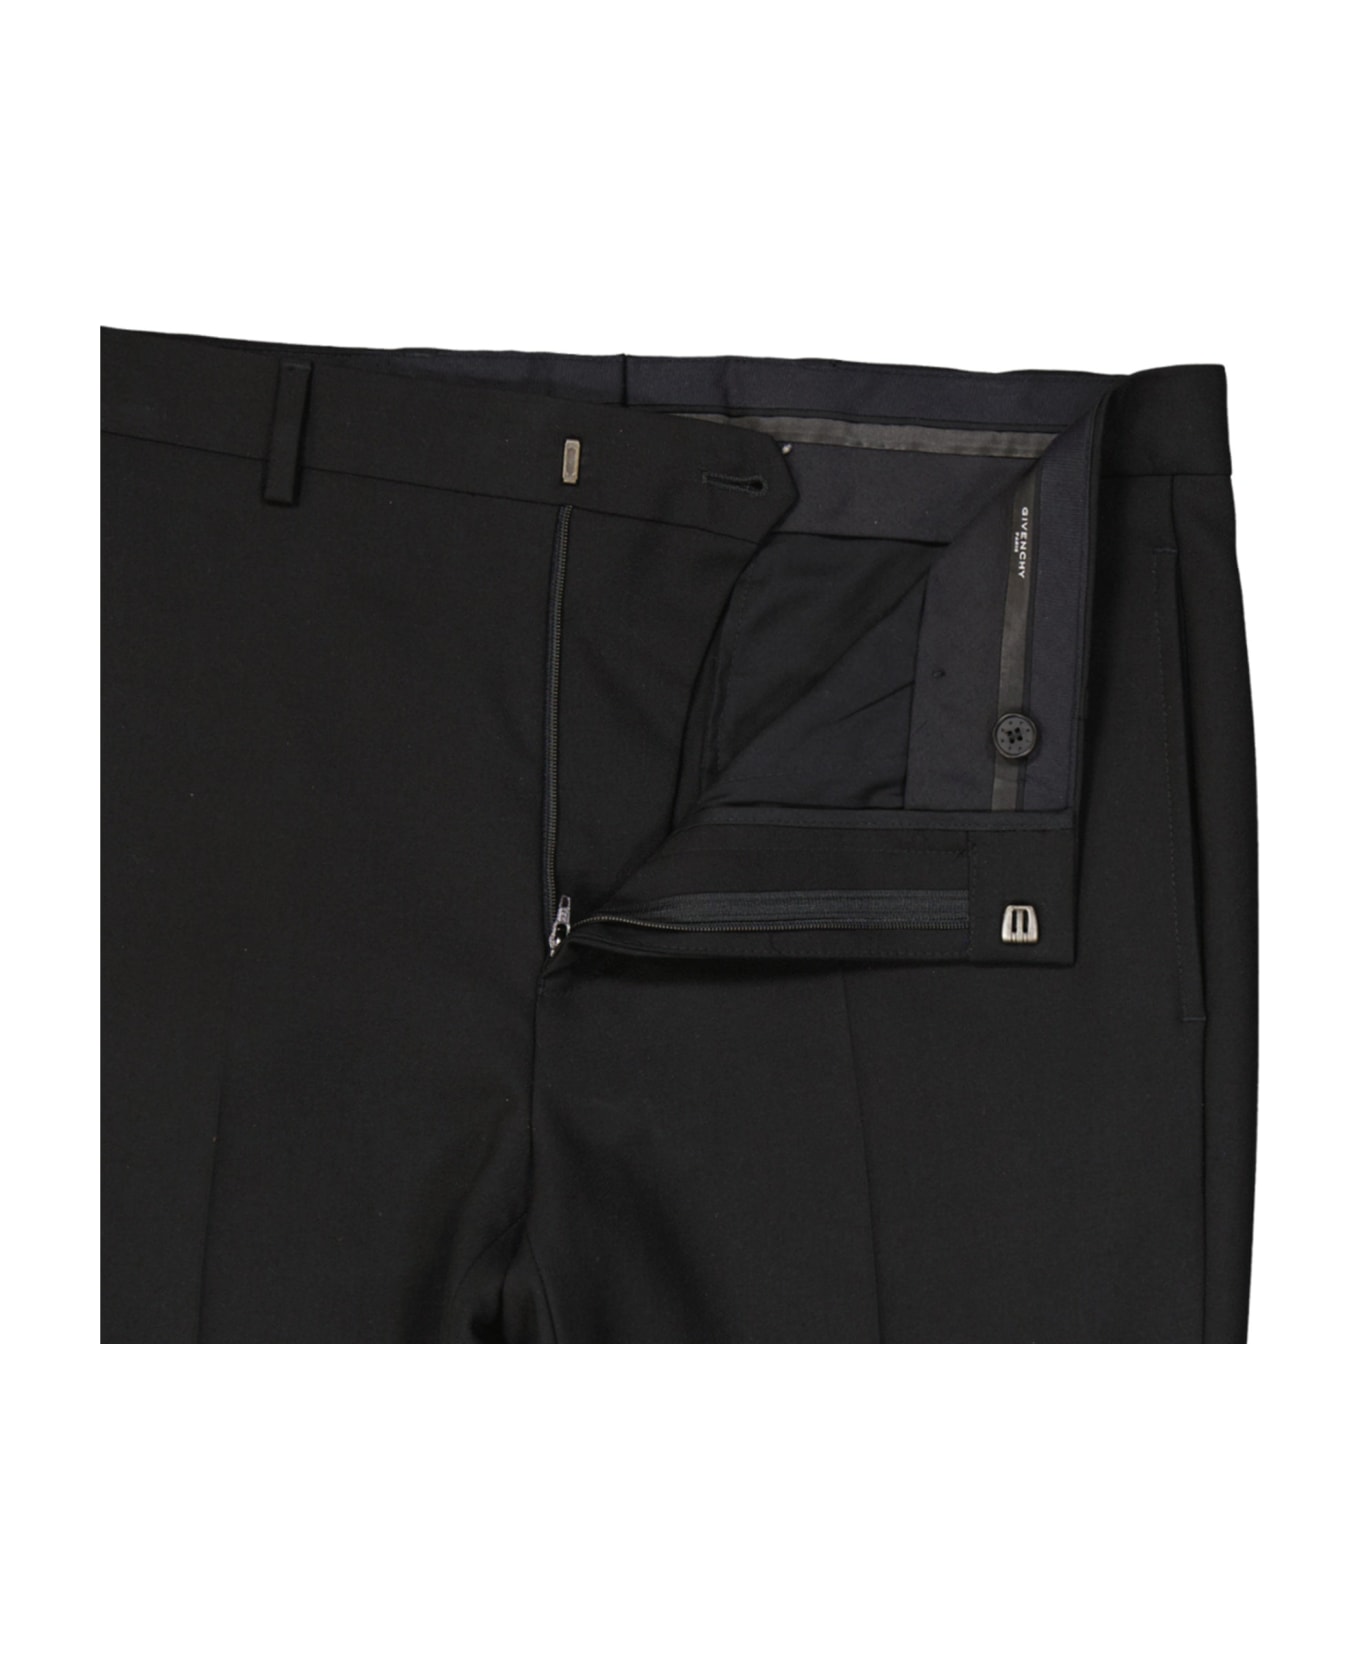 Givenchy Wool Pants - Black